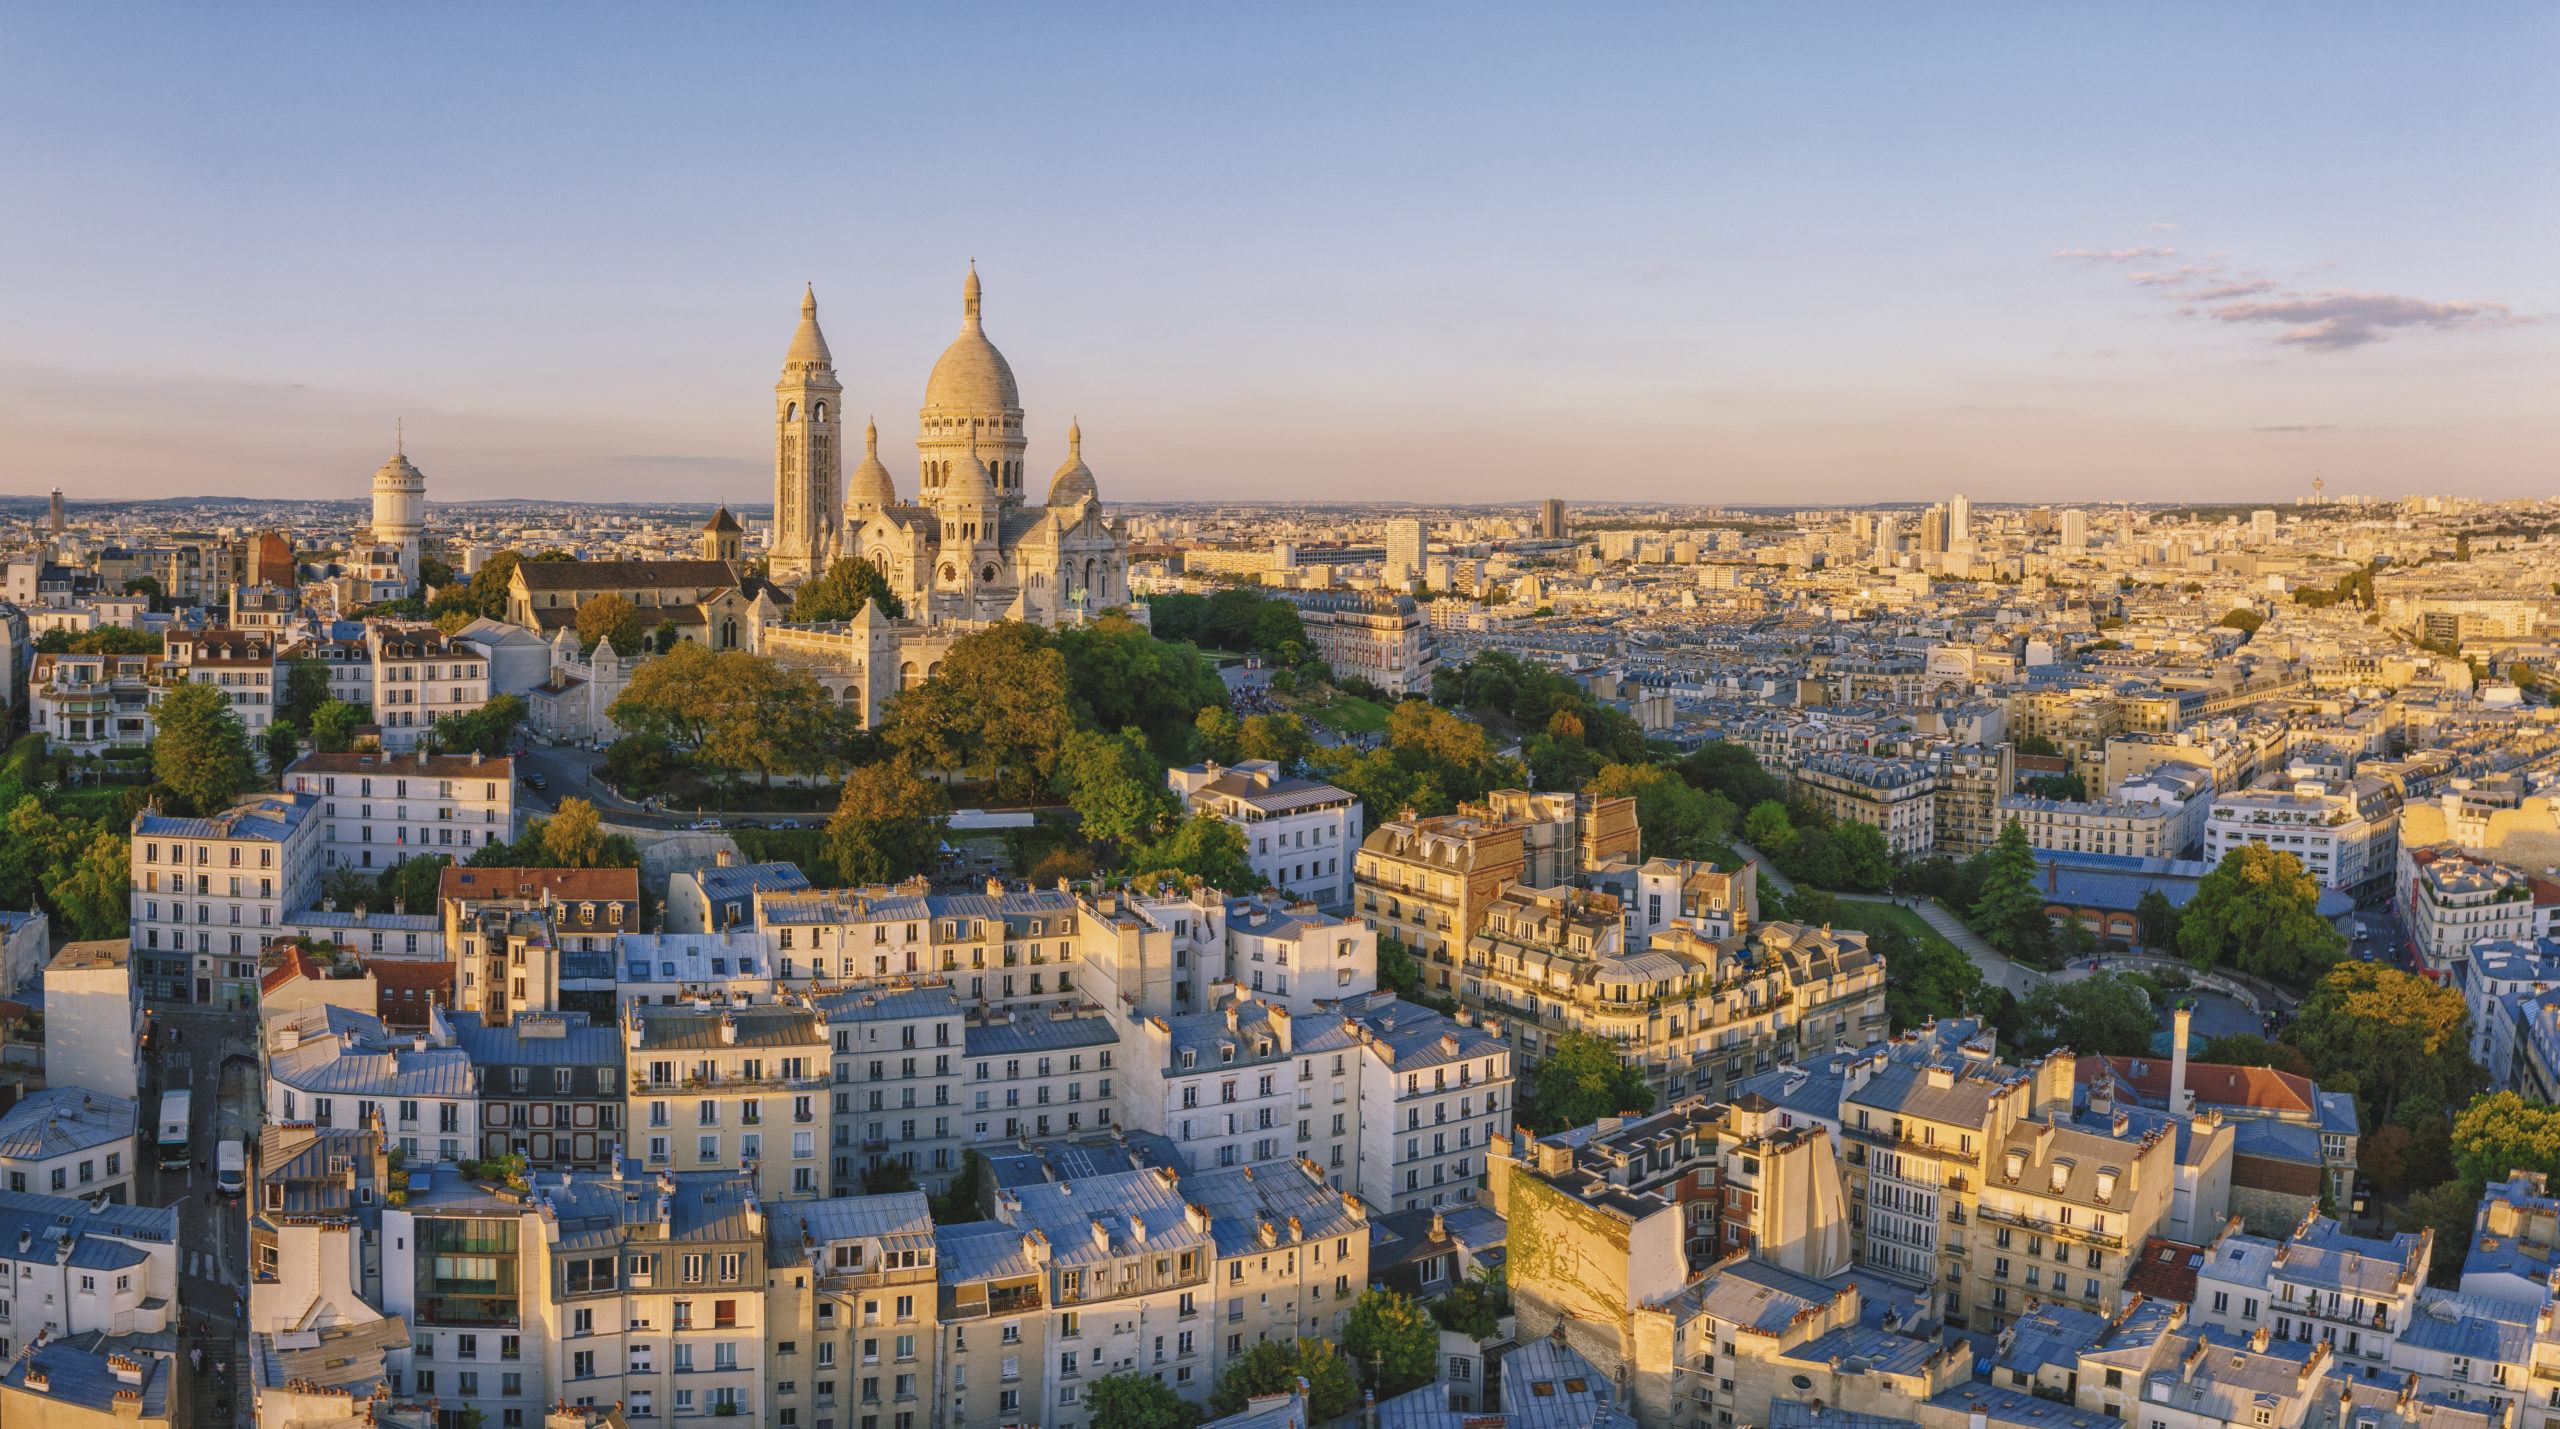 Luftaufnahme des Hügels Montmartre mit der Basilique du Sacre-Coeur in Paris